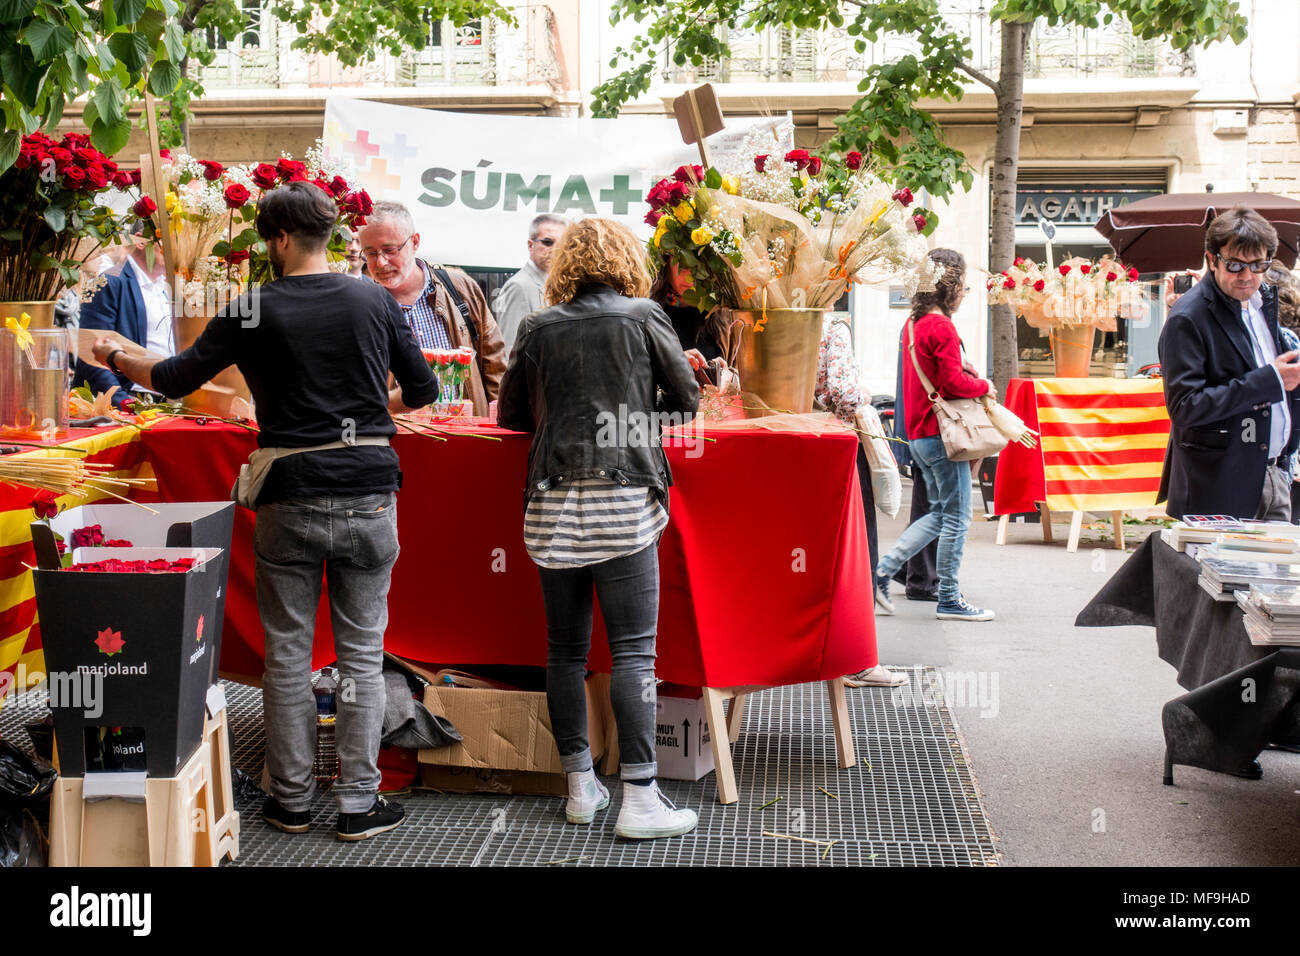 Barcellona, Spagna. Aprile 23, 2018: Diada de Sant Jordi o Saint George's giorno o il giorno di libri e di rose, una famosa celebrazione catalana. Persone sellin Foto Stock